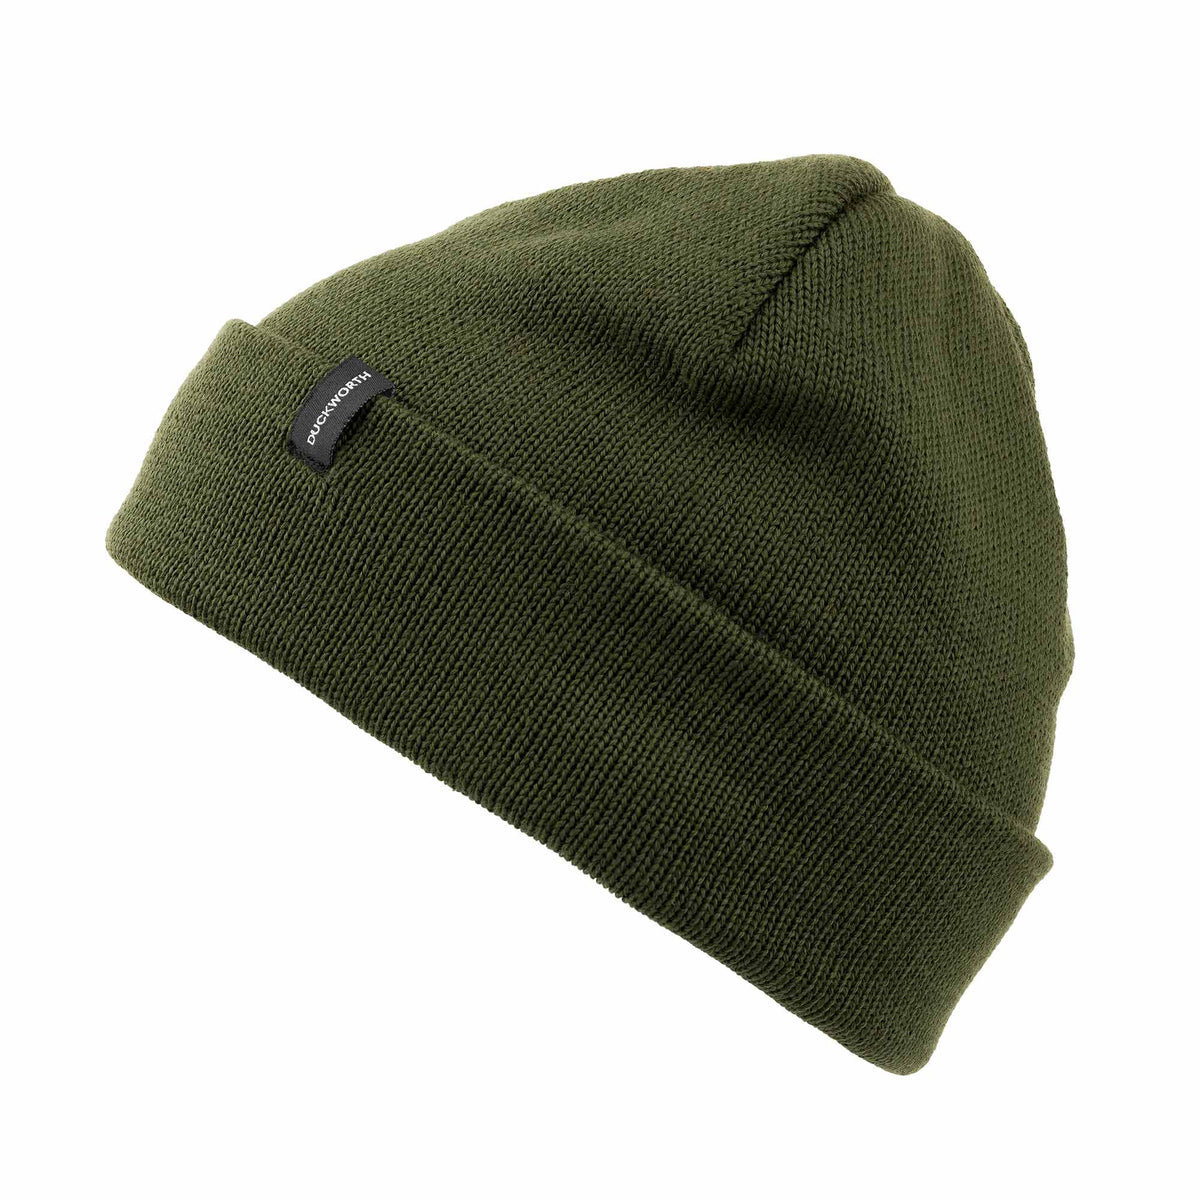 Falke soft hat. Size M. 100% Virgin wool.